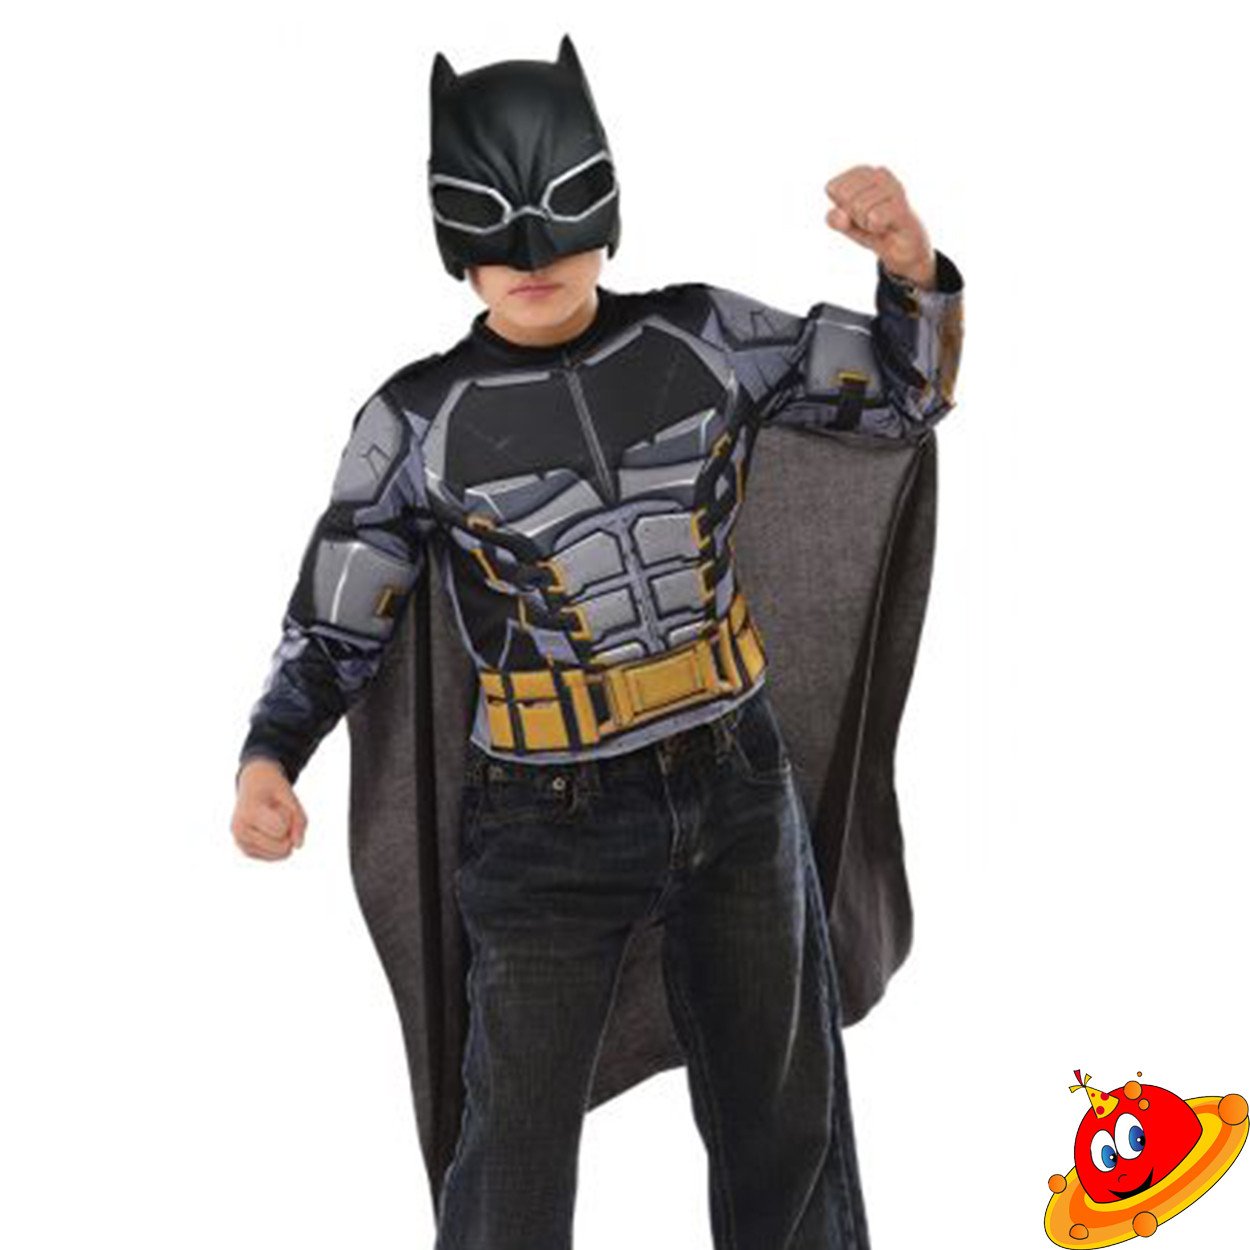 Nuovo Rubie's Justice League Batman Bambino Costume con Maschera Mantella  XS S M